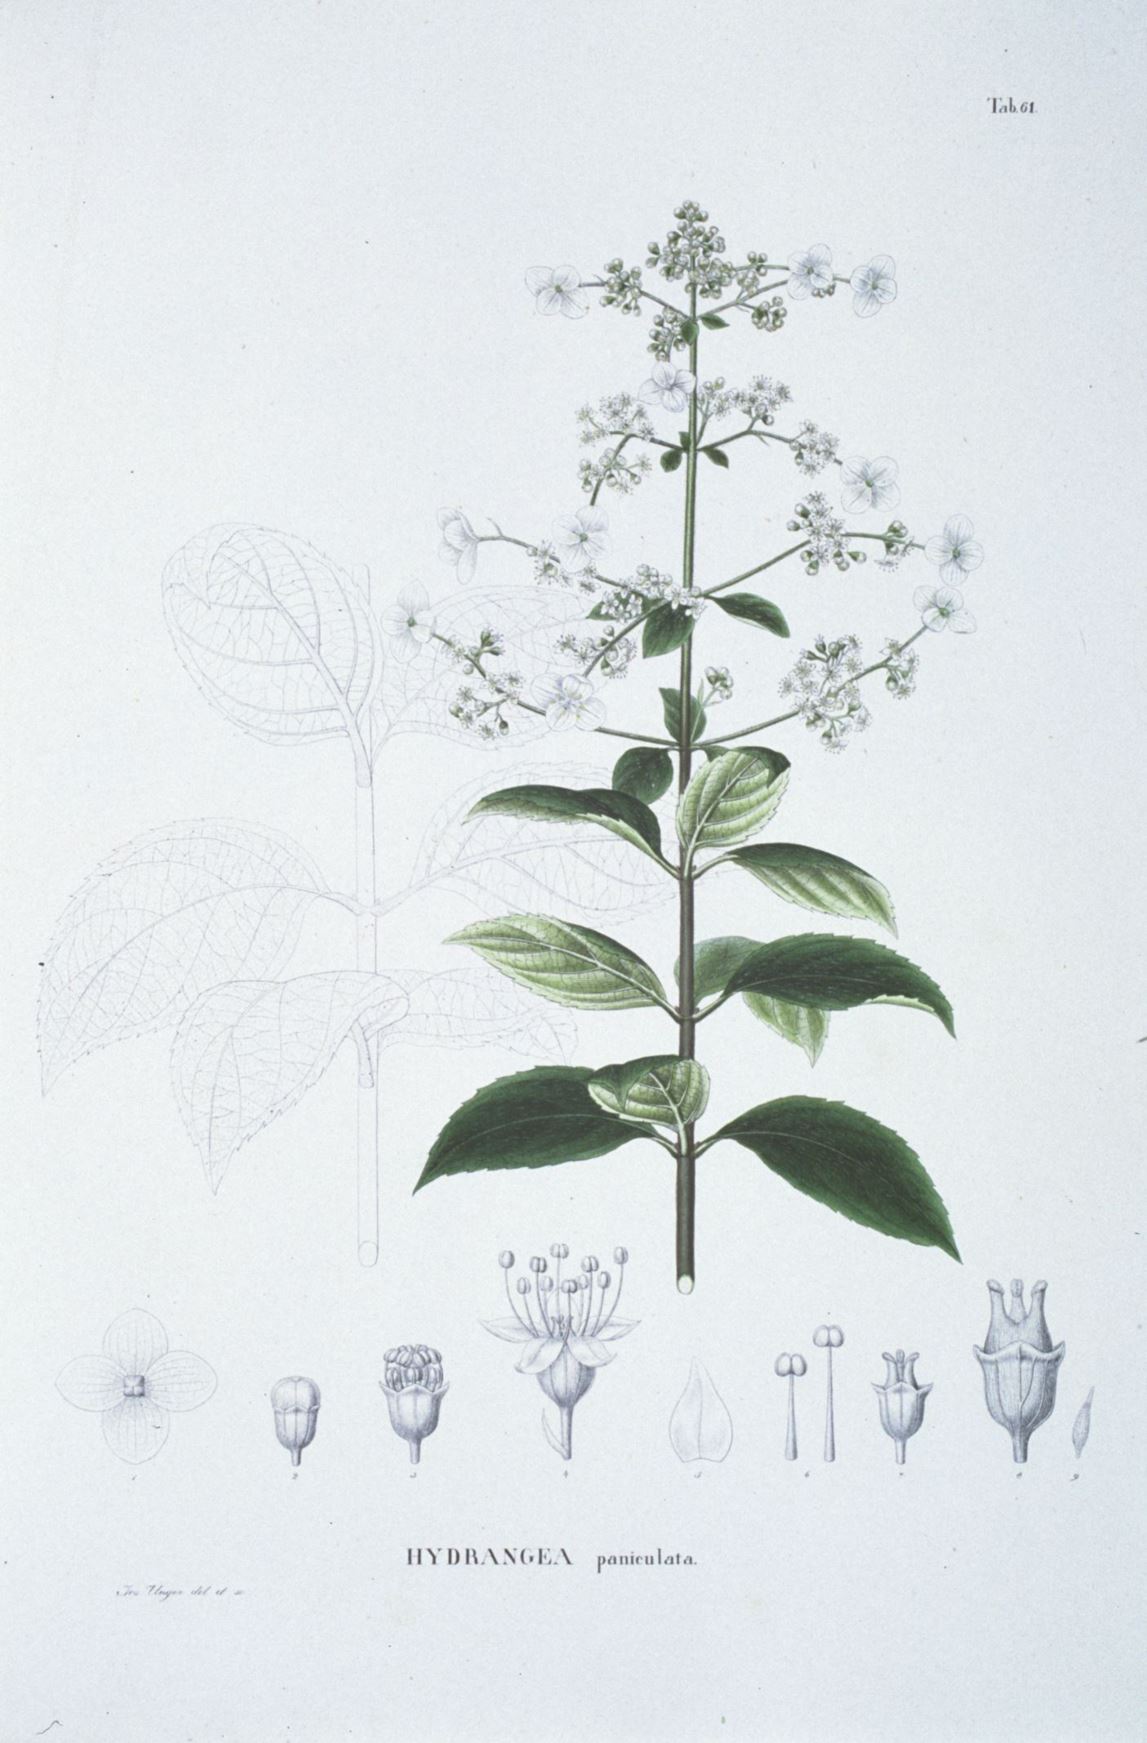 Hydrangea paniculata - Pluimhortensia, schapenkop, panicle hydrangea, ノリウツギ nori-utsugi, 圆锥绣球 yuan zhui xiu qiu